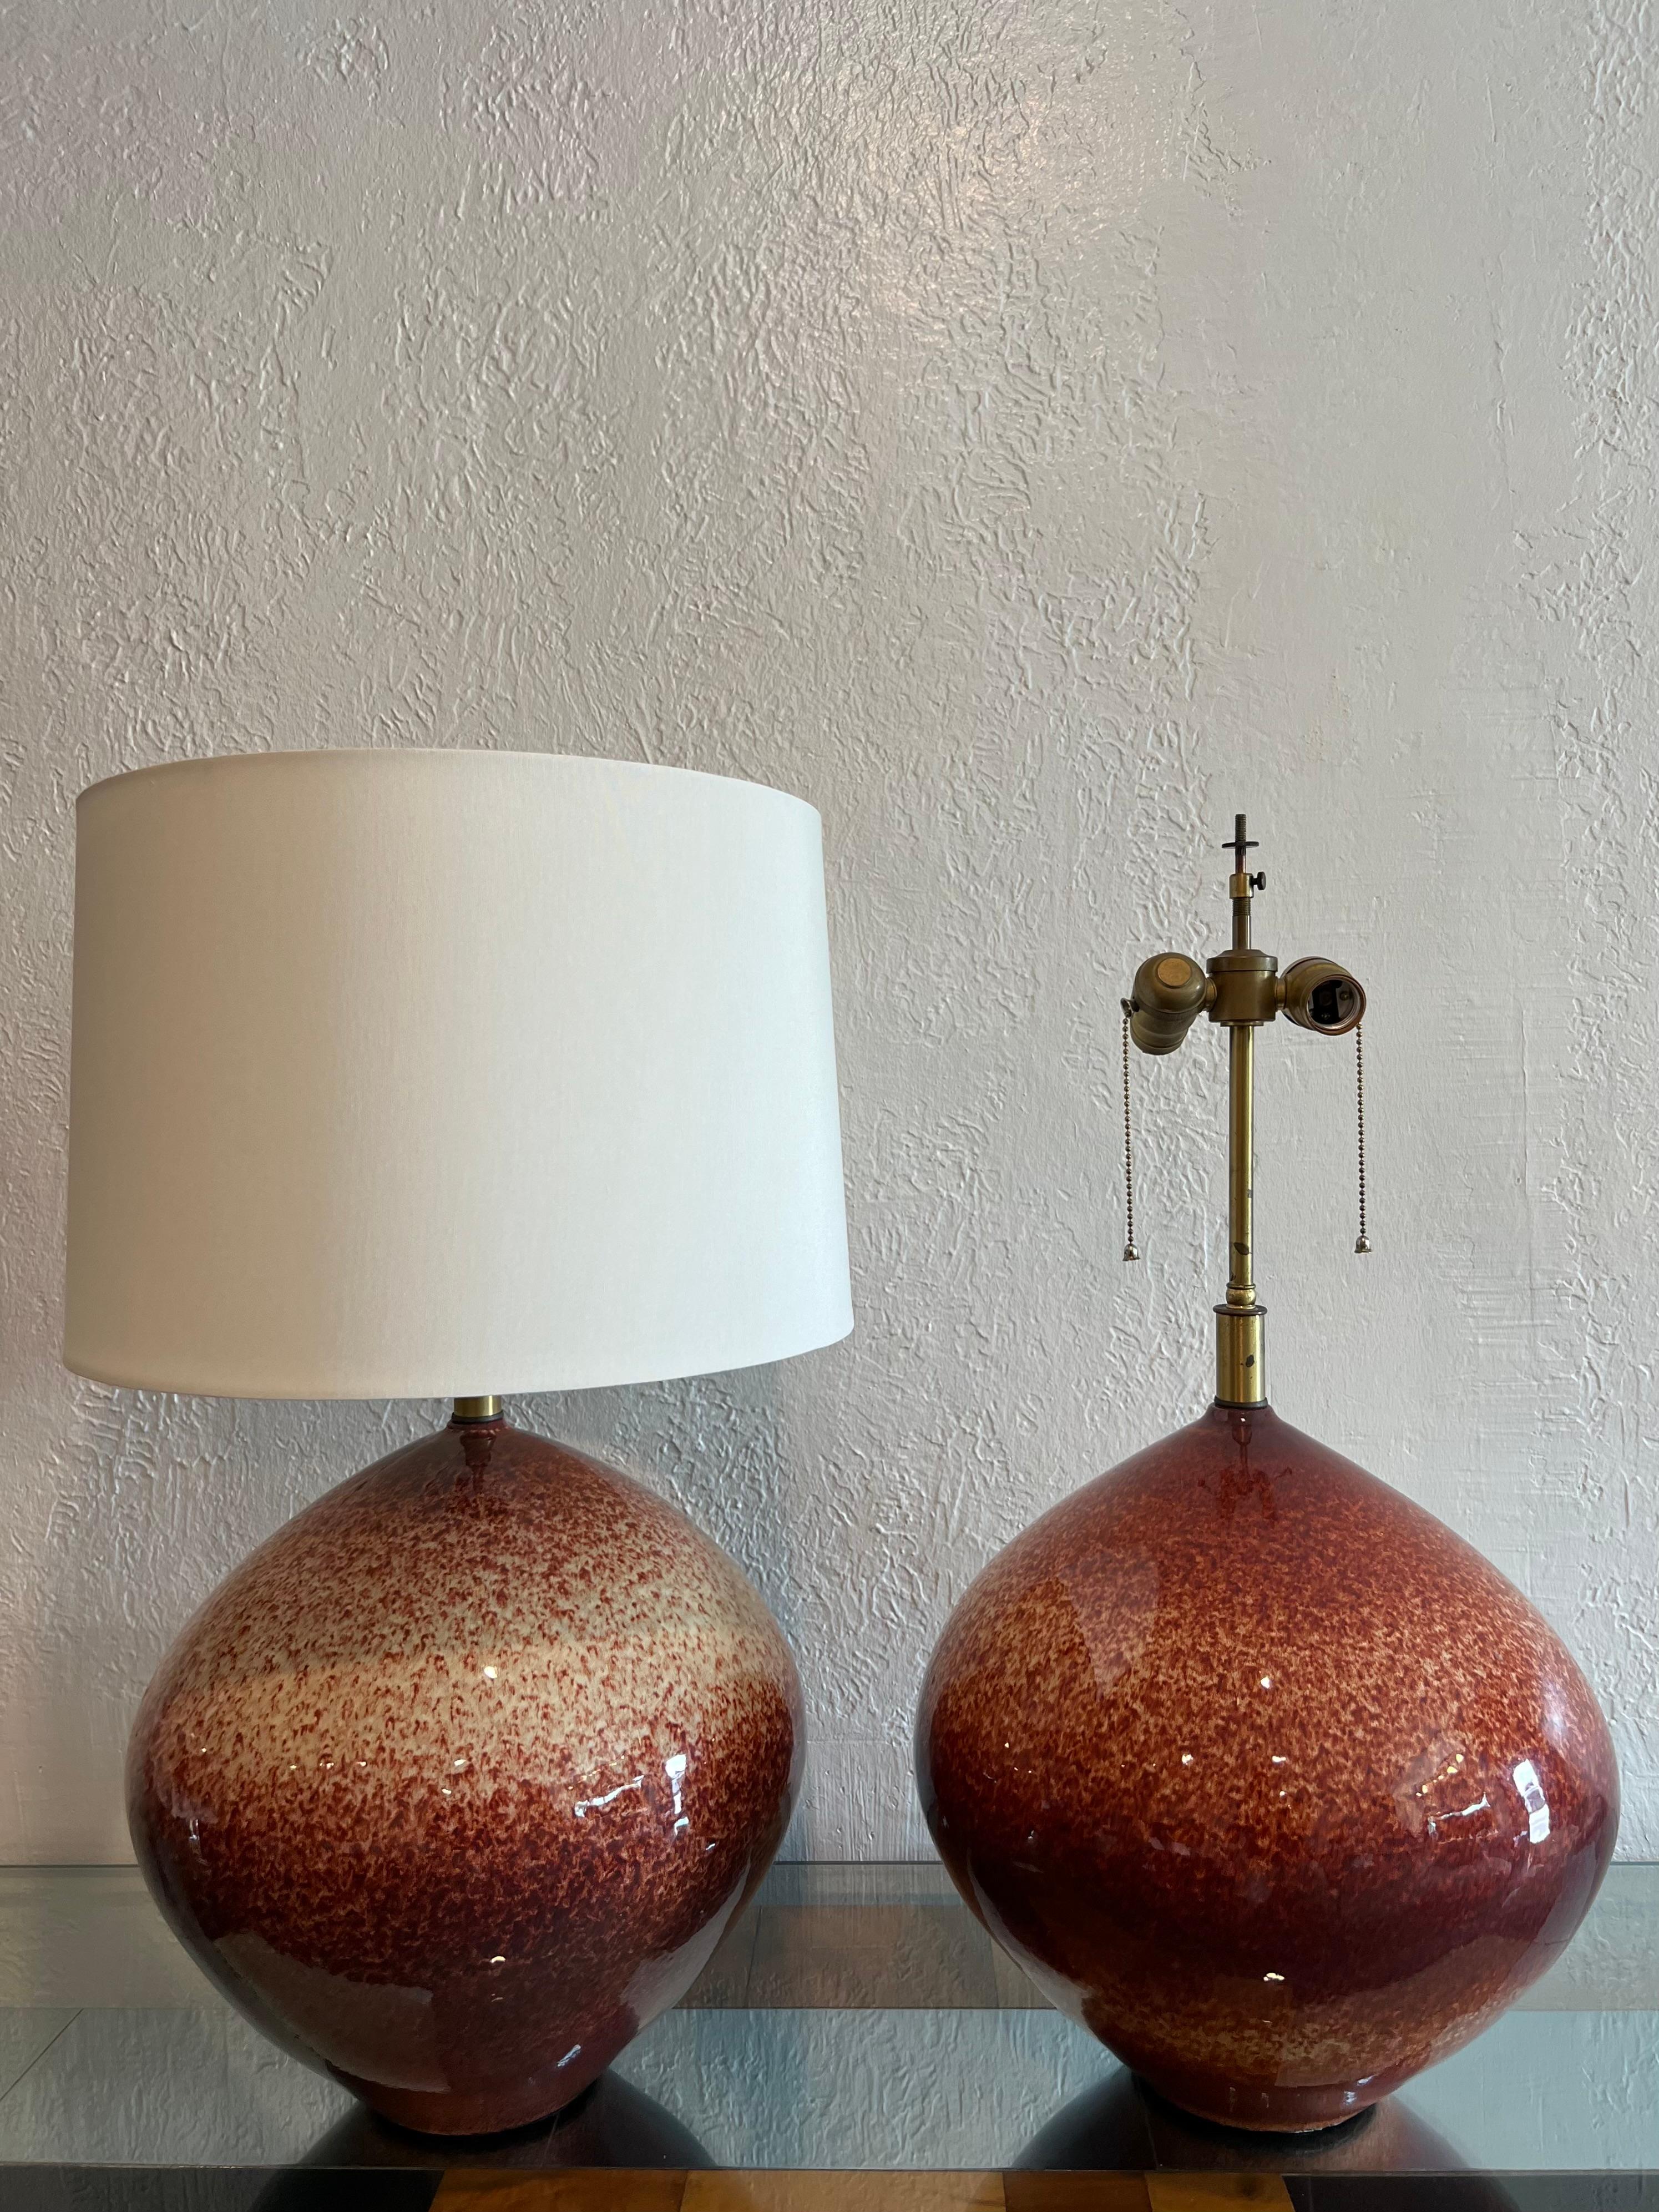 Rare paire de lampes de table Leon Rosen pour Design/One. Chaque lampe présente un motif d'éclaboussures unique. En état de marche, avec le câblage et la quincaillerie d'origine. Les lampes ont été équipées de nouveaux abat-jour. Les mesures avec